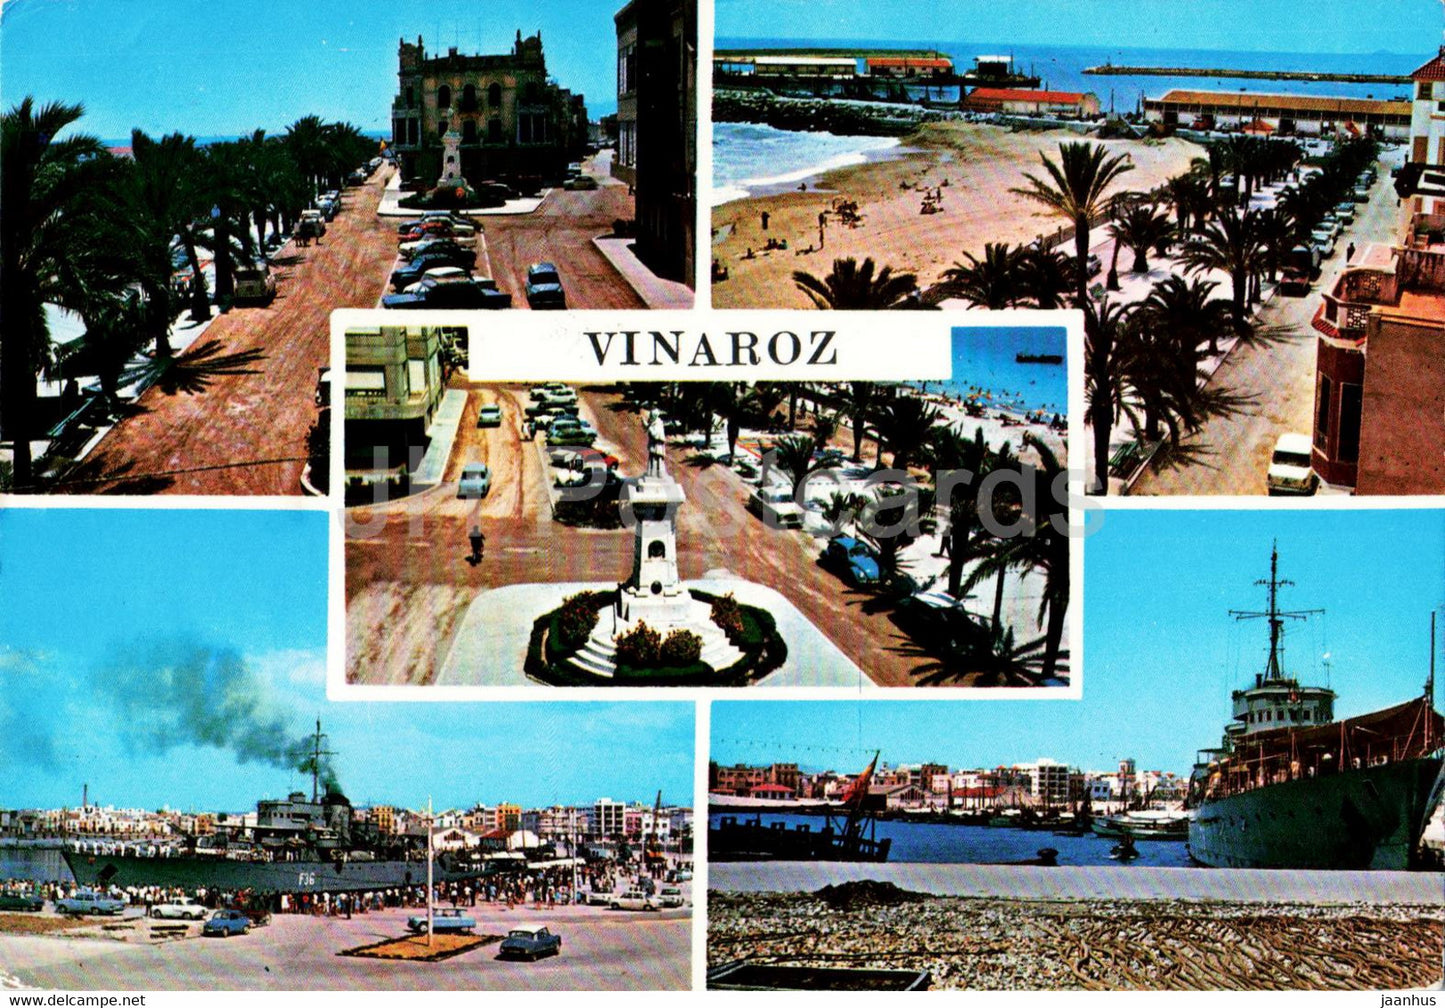 Vinaroz - Paseo Generalisimo - Monumento a Costa y Borras - Playa y Paseo - ship - 34 - Spain - used - JH Postcards